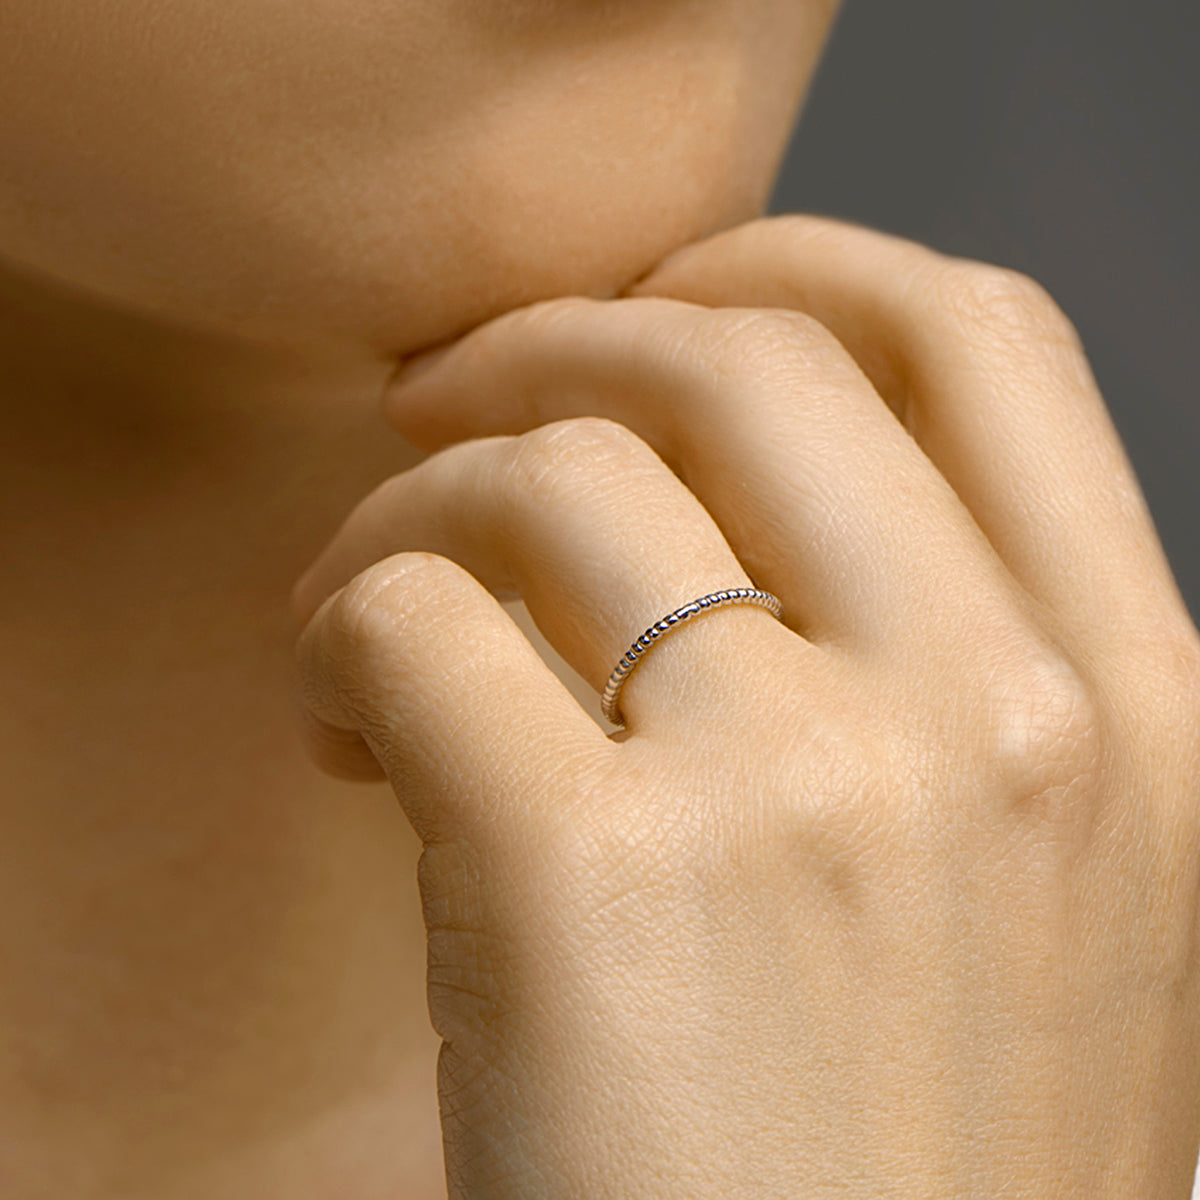 14 KT witgouden stijlvolle aanschuifring die gedragen wordt in combinatie met andere ringen uit de collectie gedenksieraden en net iets meer body geeft aan een ring die je anders bijvoorbeeld stand-alone zou dragen. 